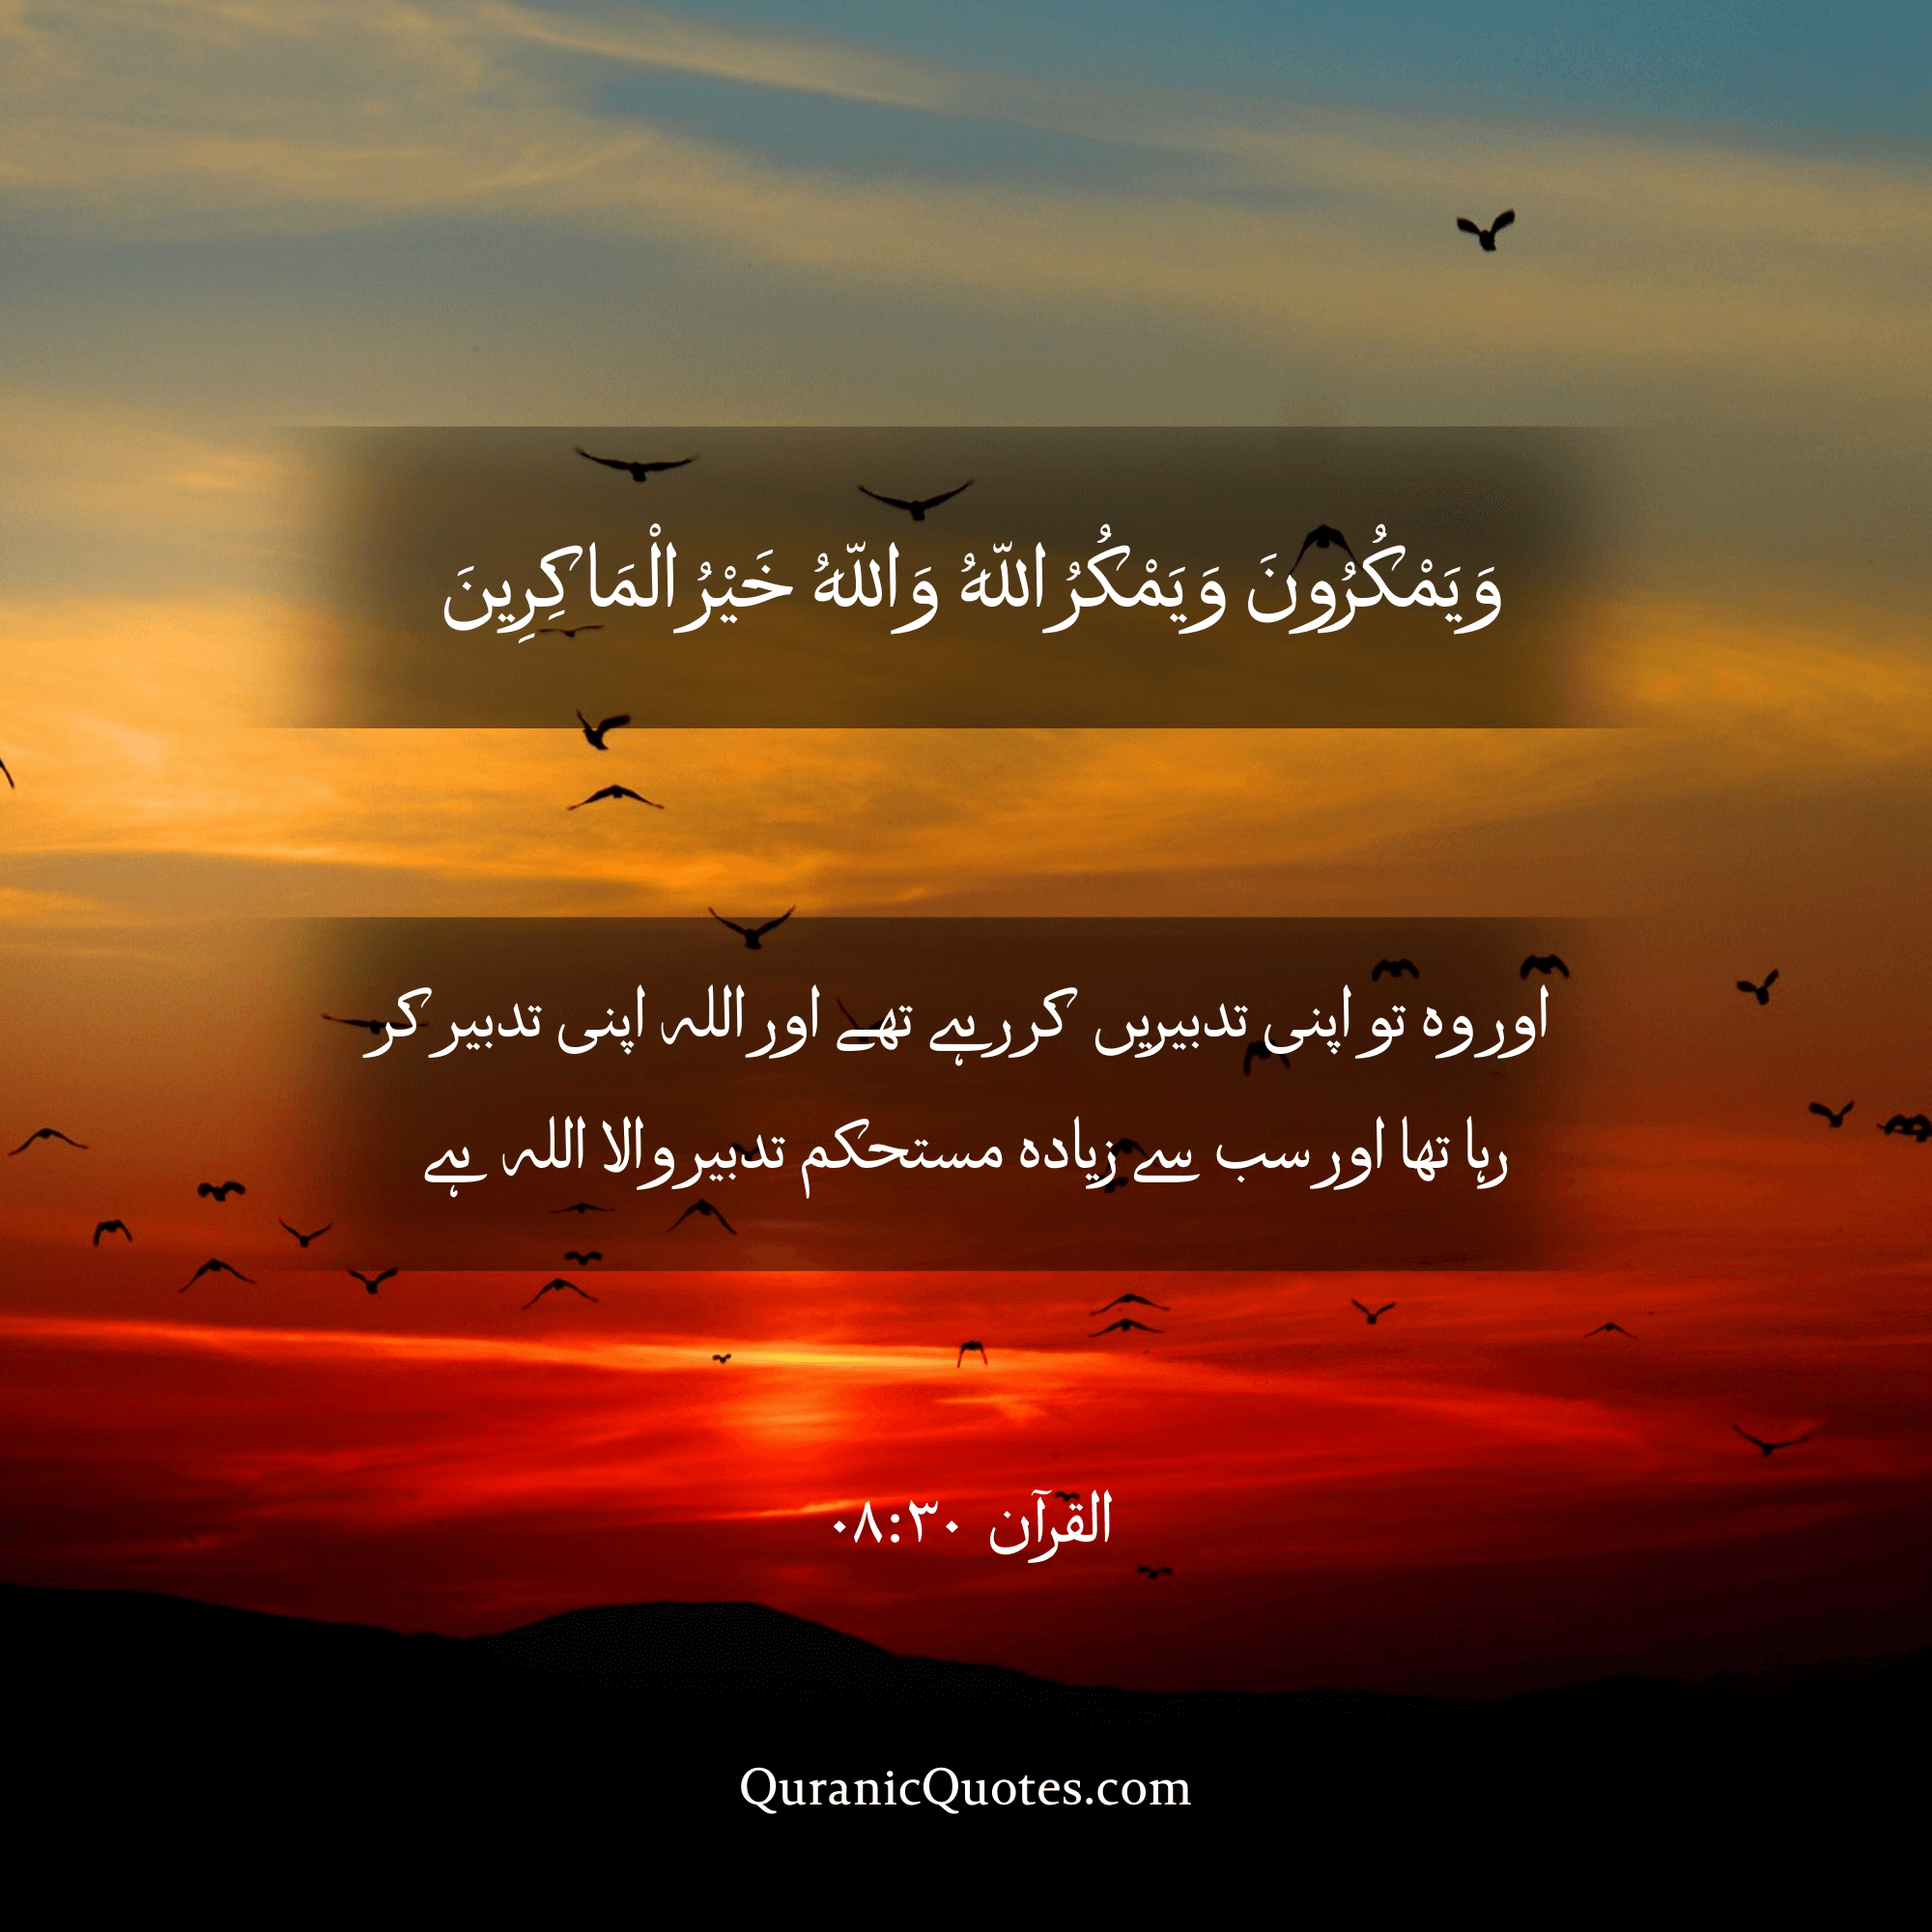 Quranic Quotes in Urdu 494